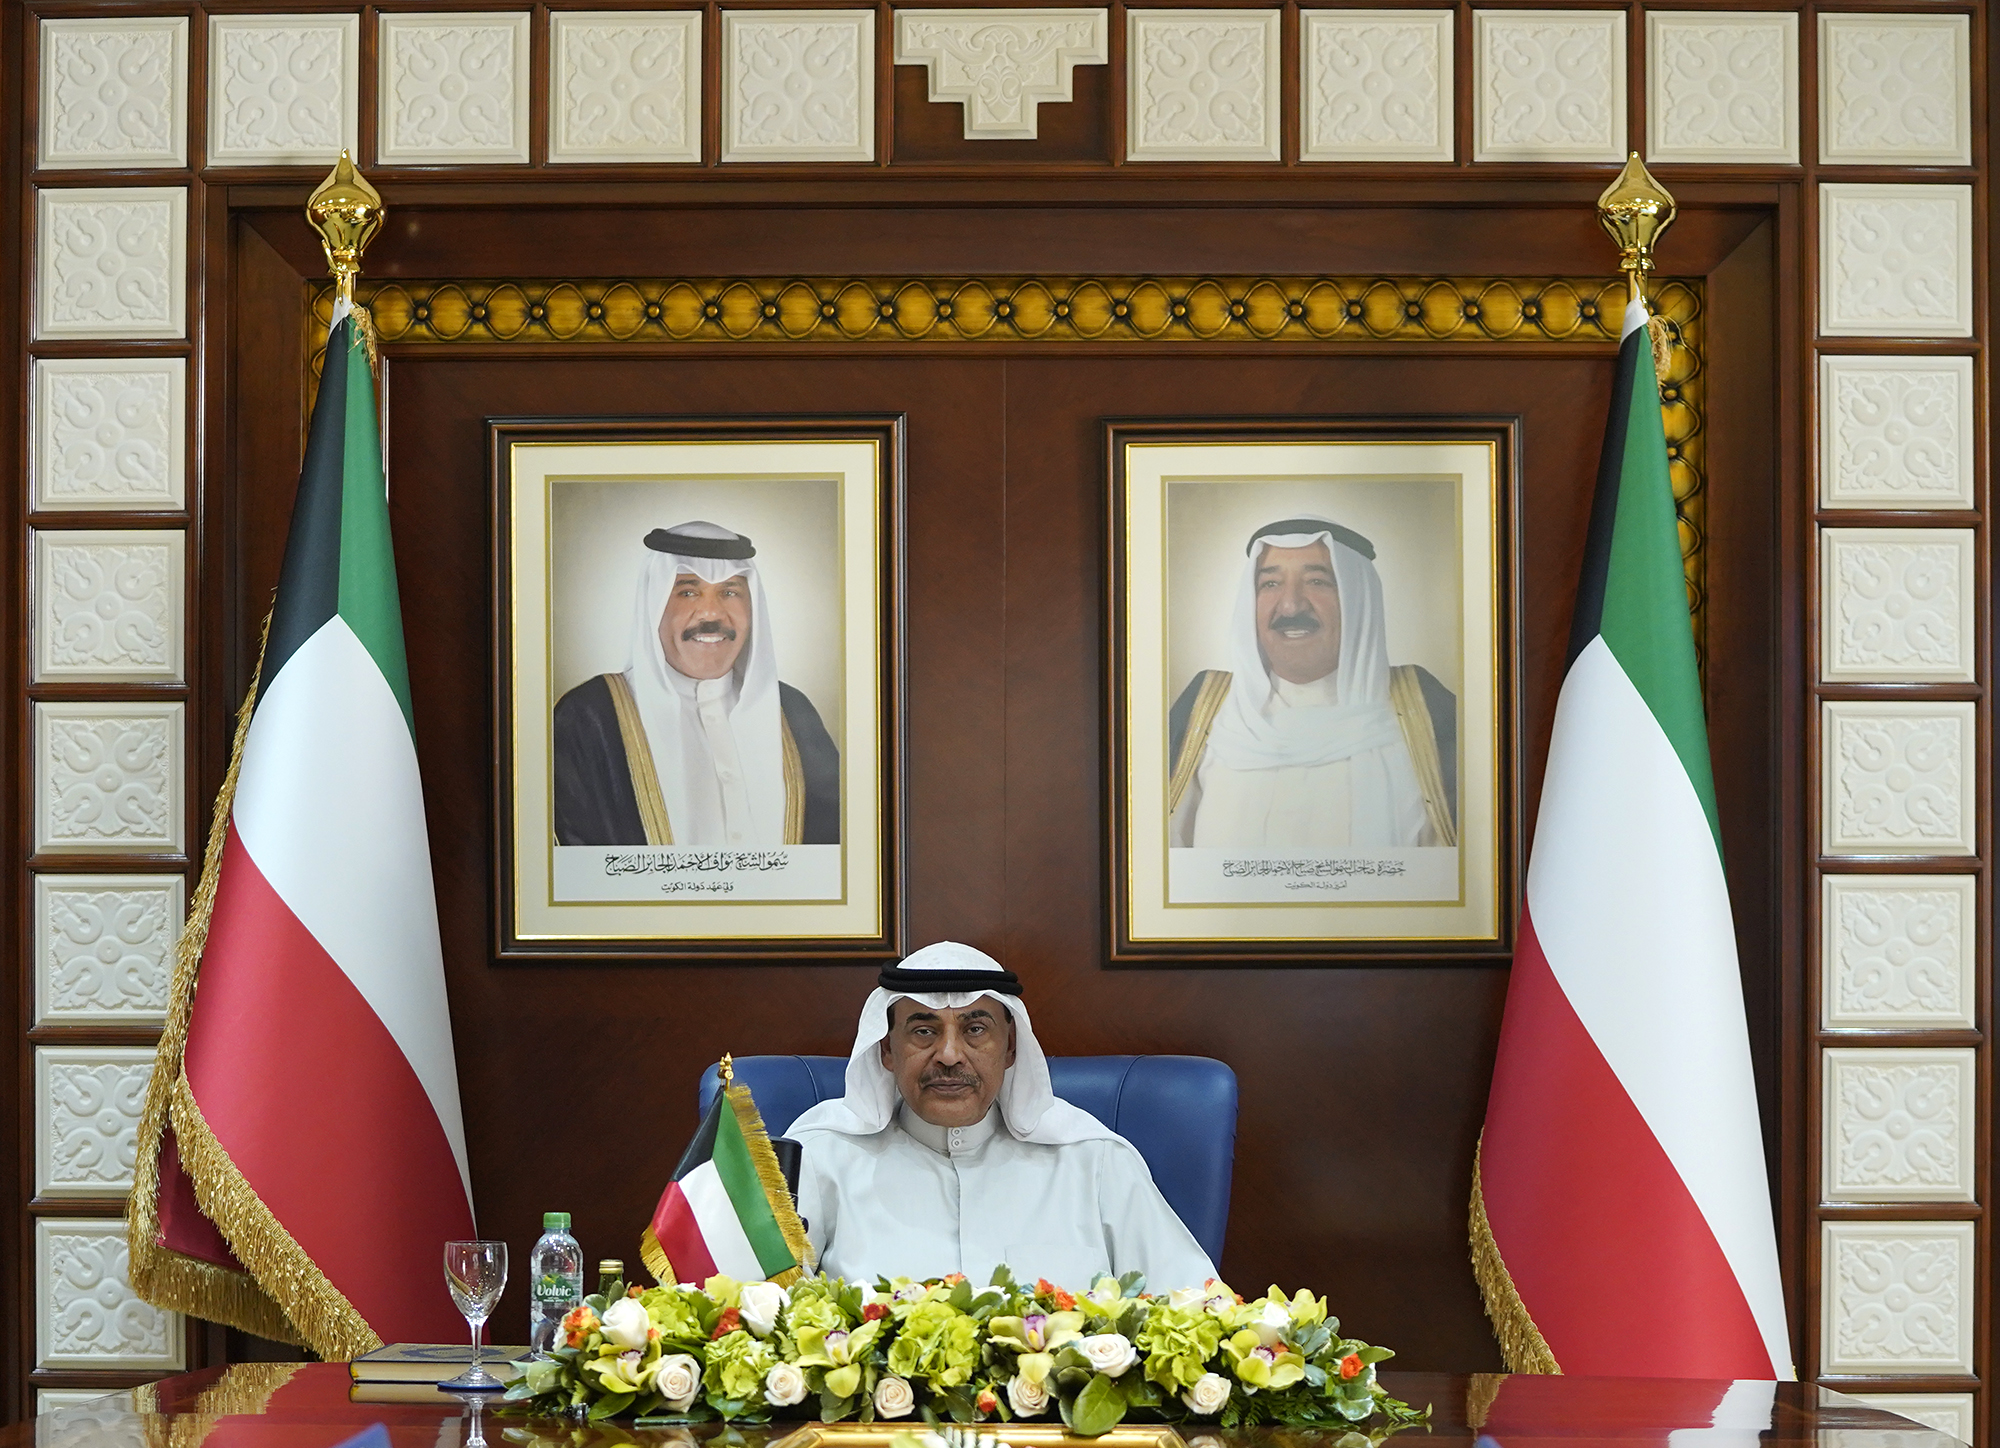 His Highness Sheikh Sabah Khaled Al-Hamad Al-Sabah